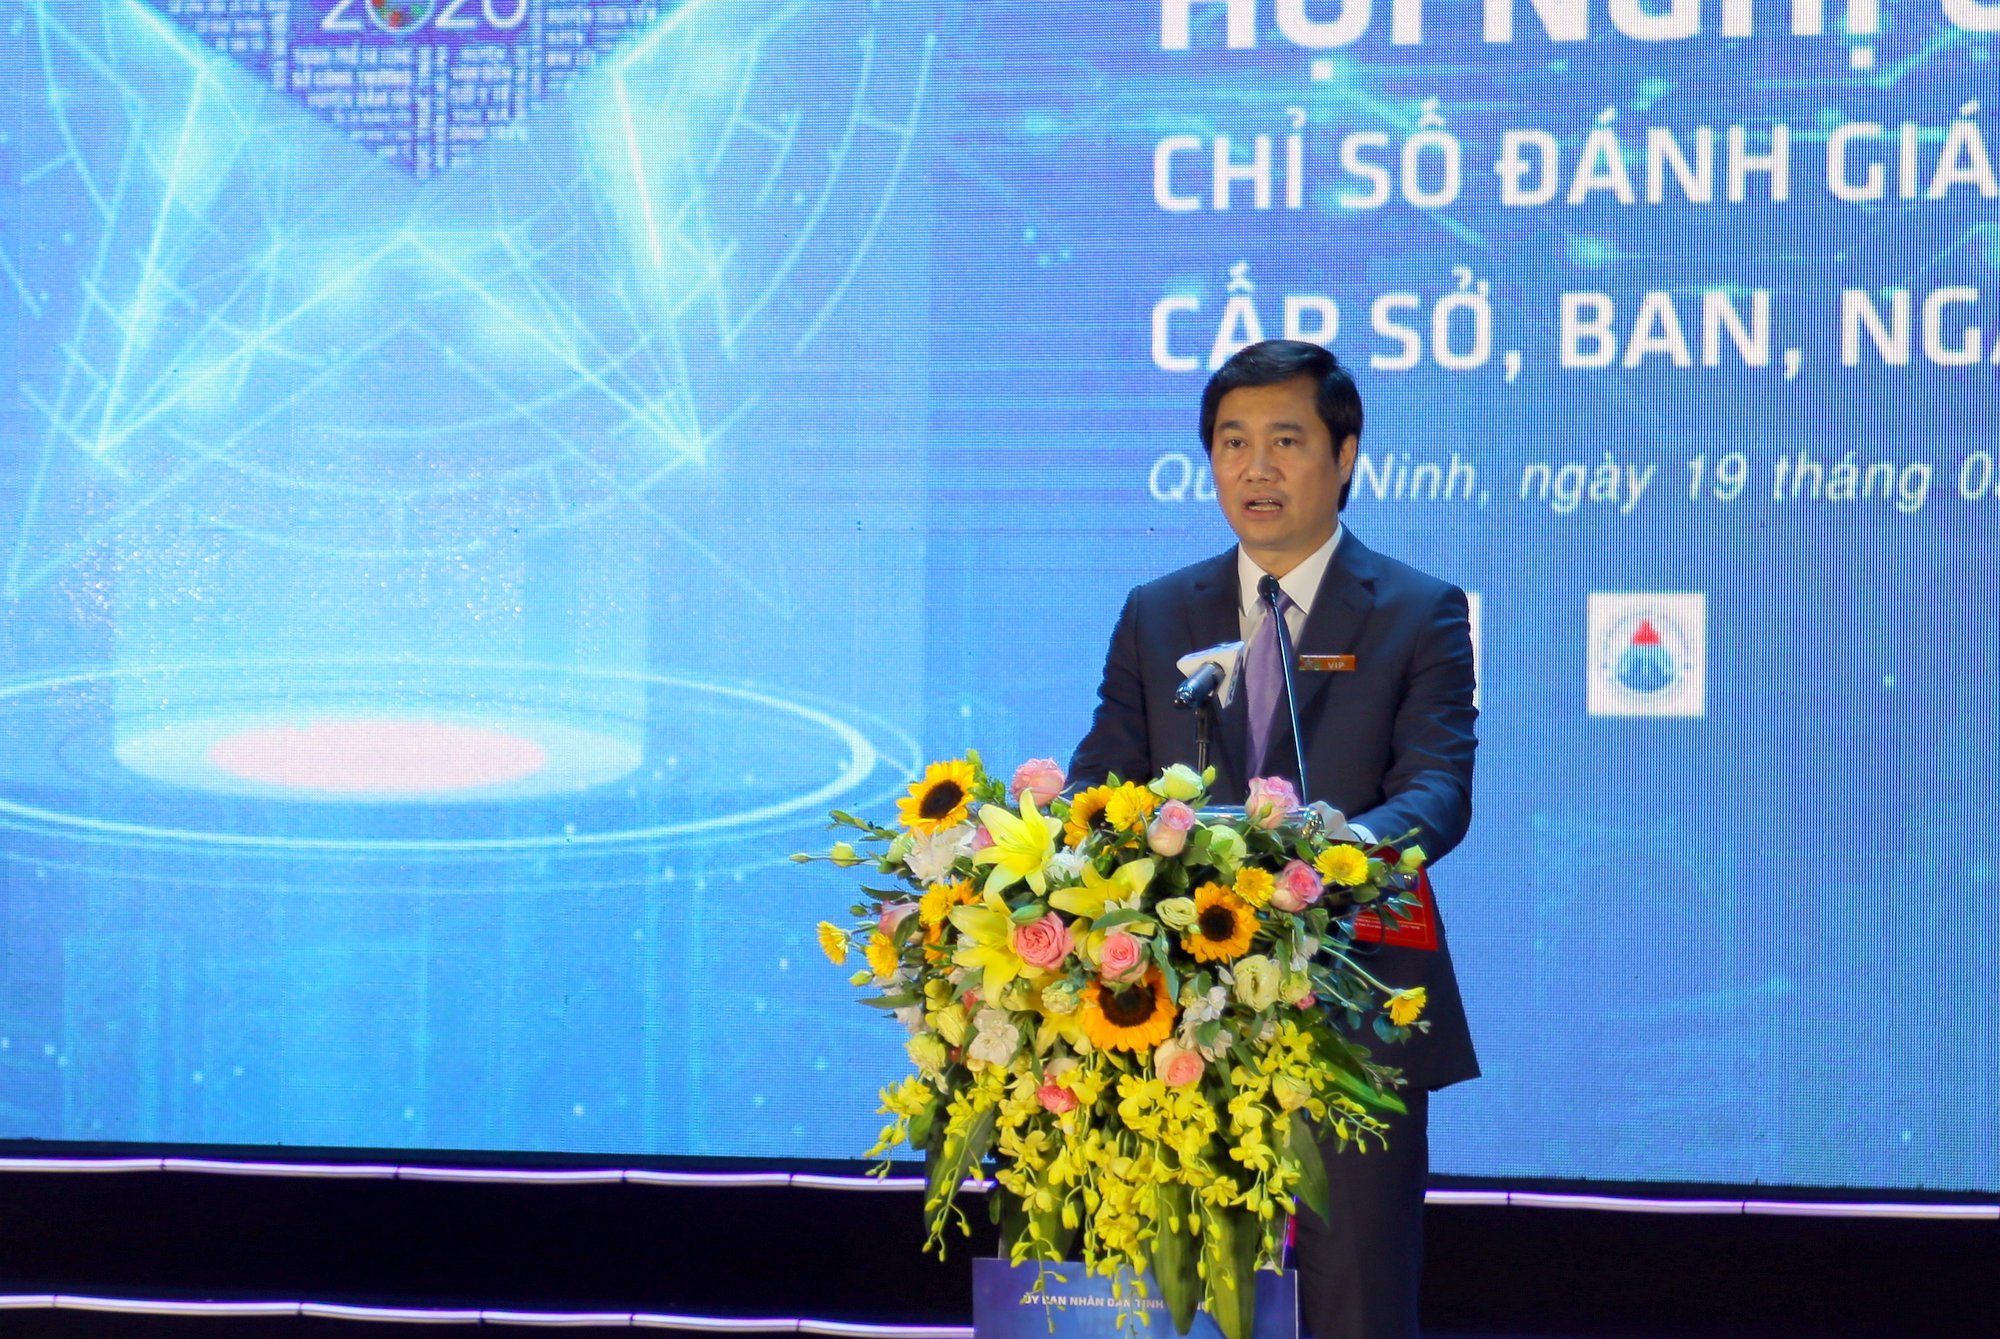 Đồng chí Nguyễn Tường Văn, Phó Bí thư Tỉnh ủy, Chủ tịch UBND tỉnh, phát biểu bế mạc hội nghị.